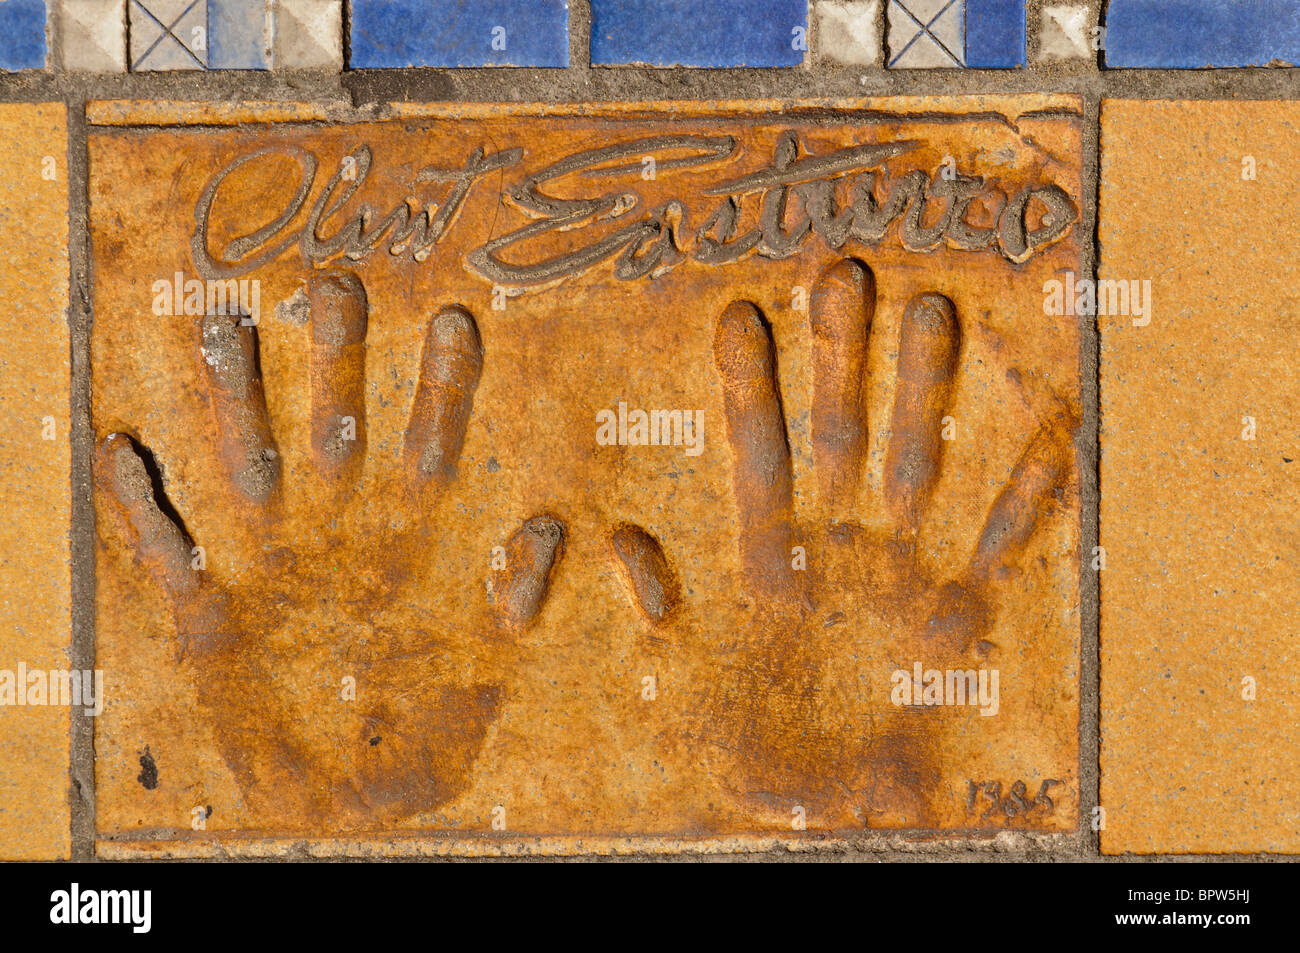 Arcilla manos pintadas de actor/director Clint Eastwood fuera del Palais des Festivals et des Congrès de Cannes Foto de stock